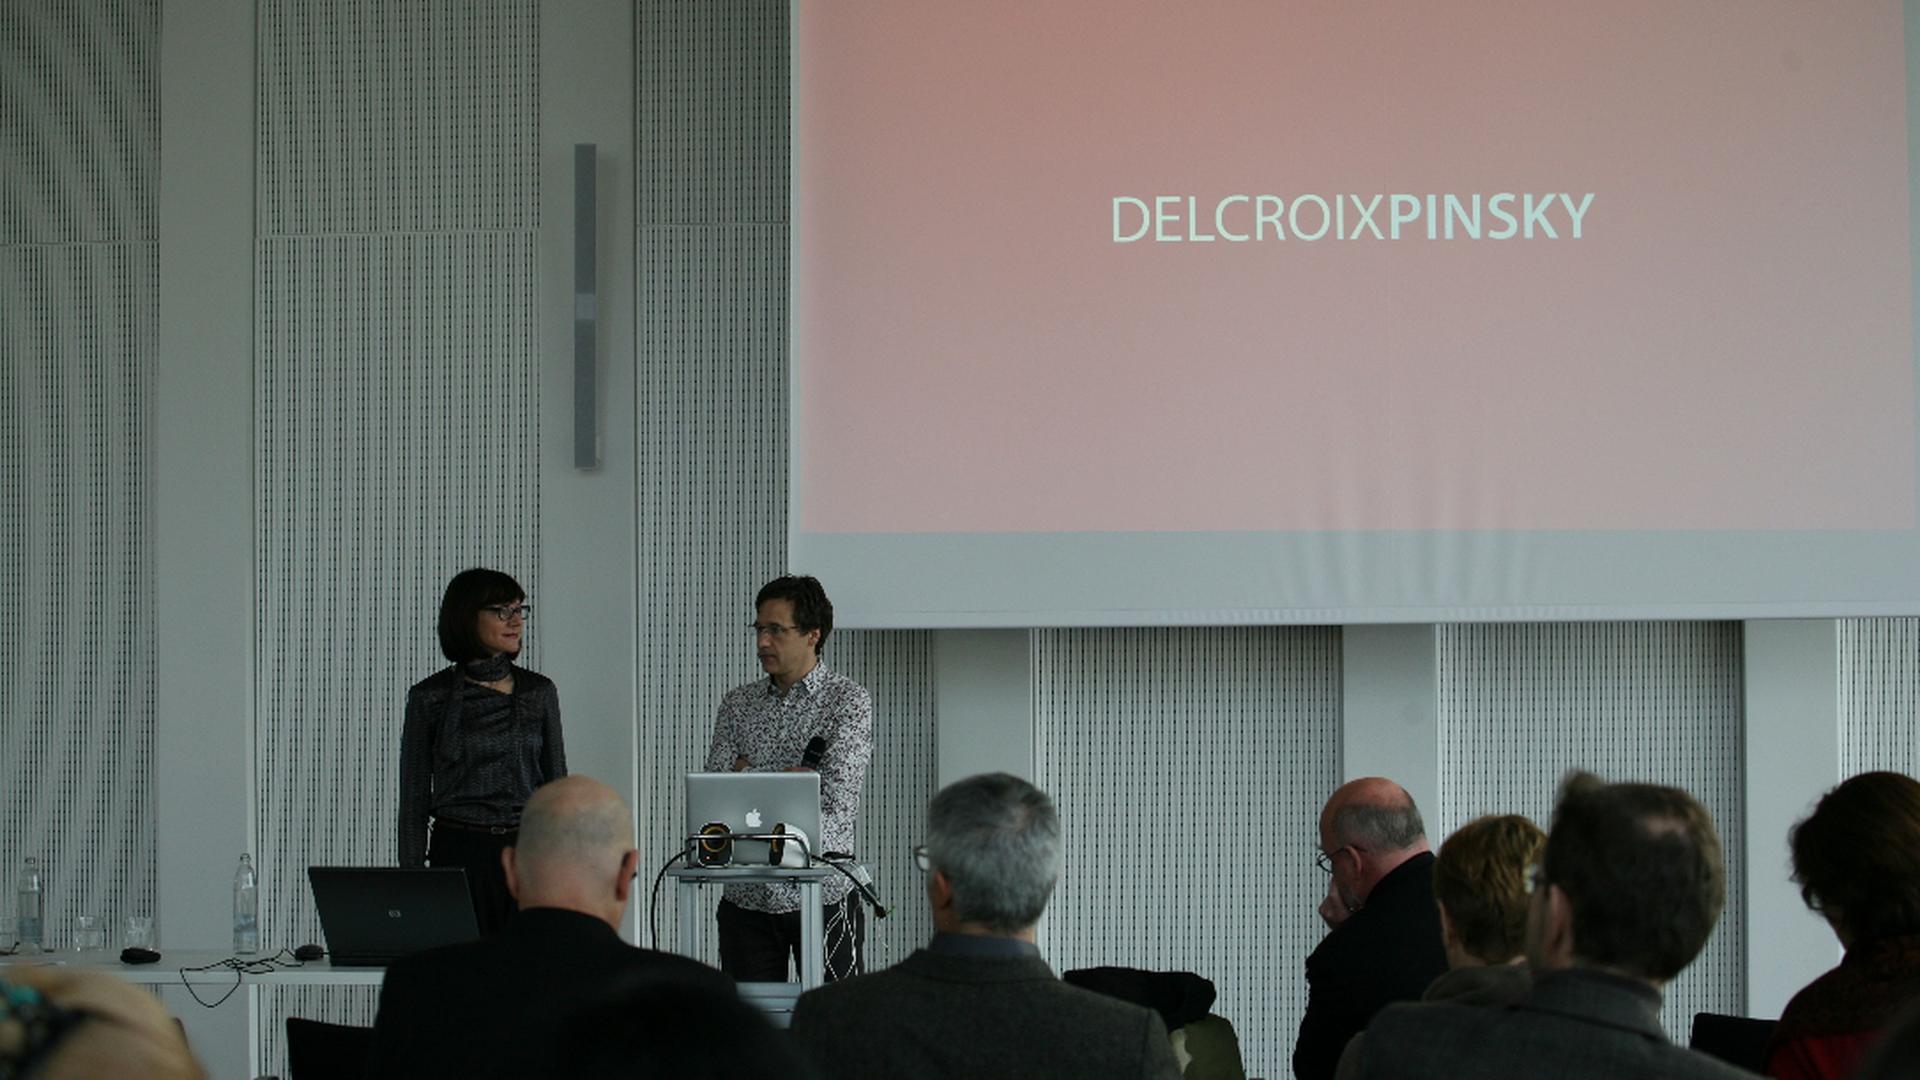 Stéphanie Delcroix et Michael Pinsky ont présenté leur projet à Esch-Belval le lundi 3 février 2014.